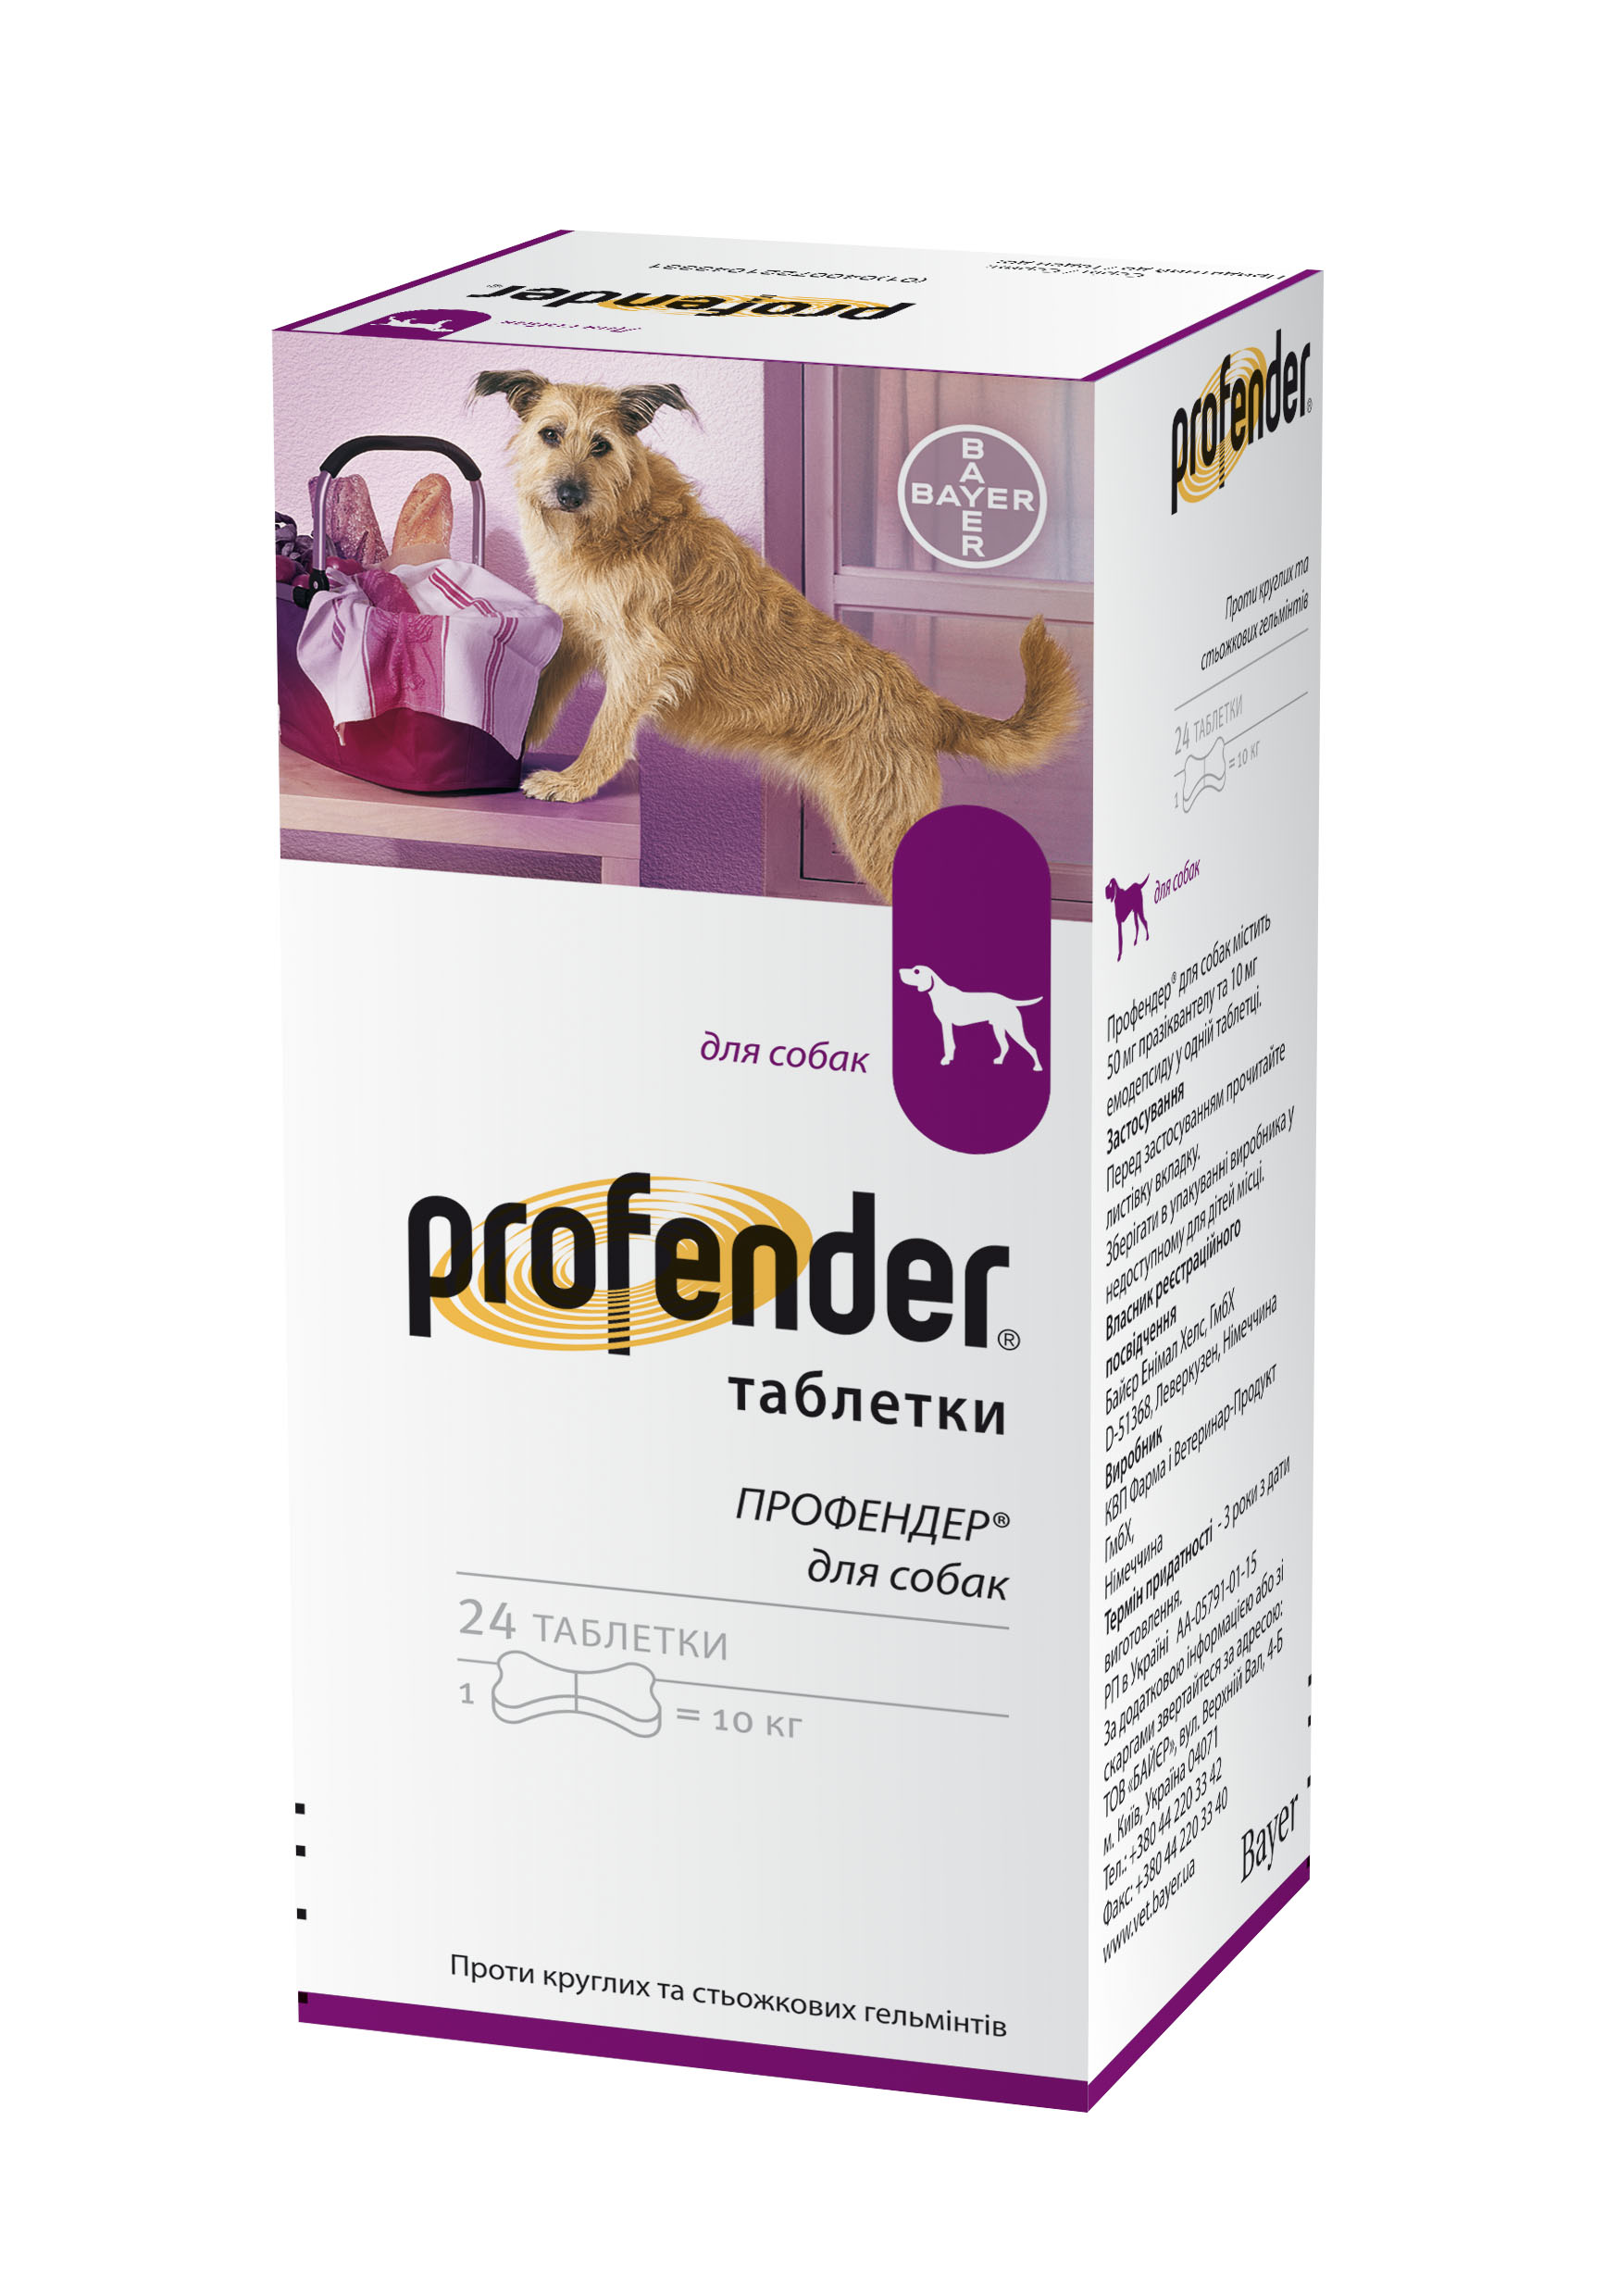 Таблетки Профендер Bayer таблетки для собак весом до 10 кг 24 таблетки